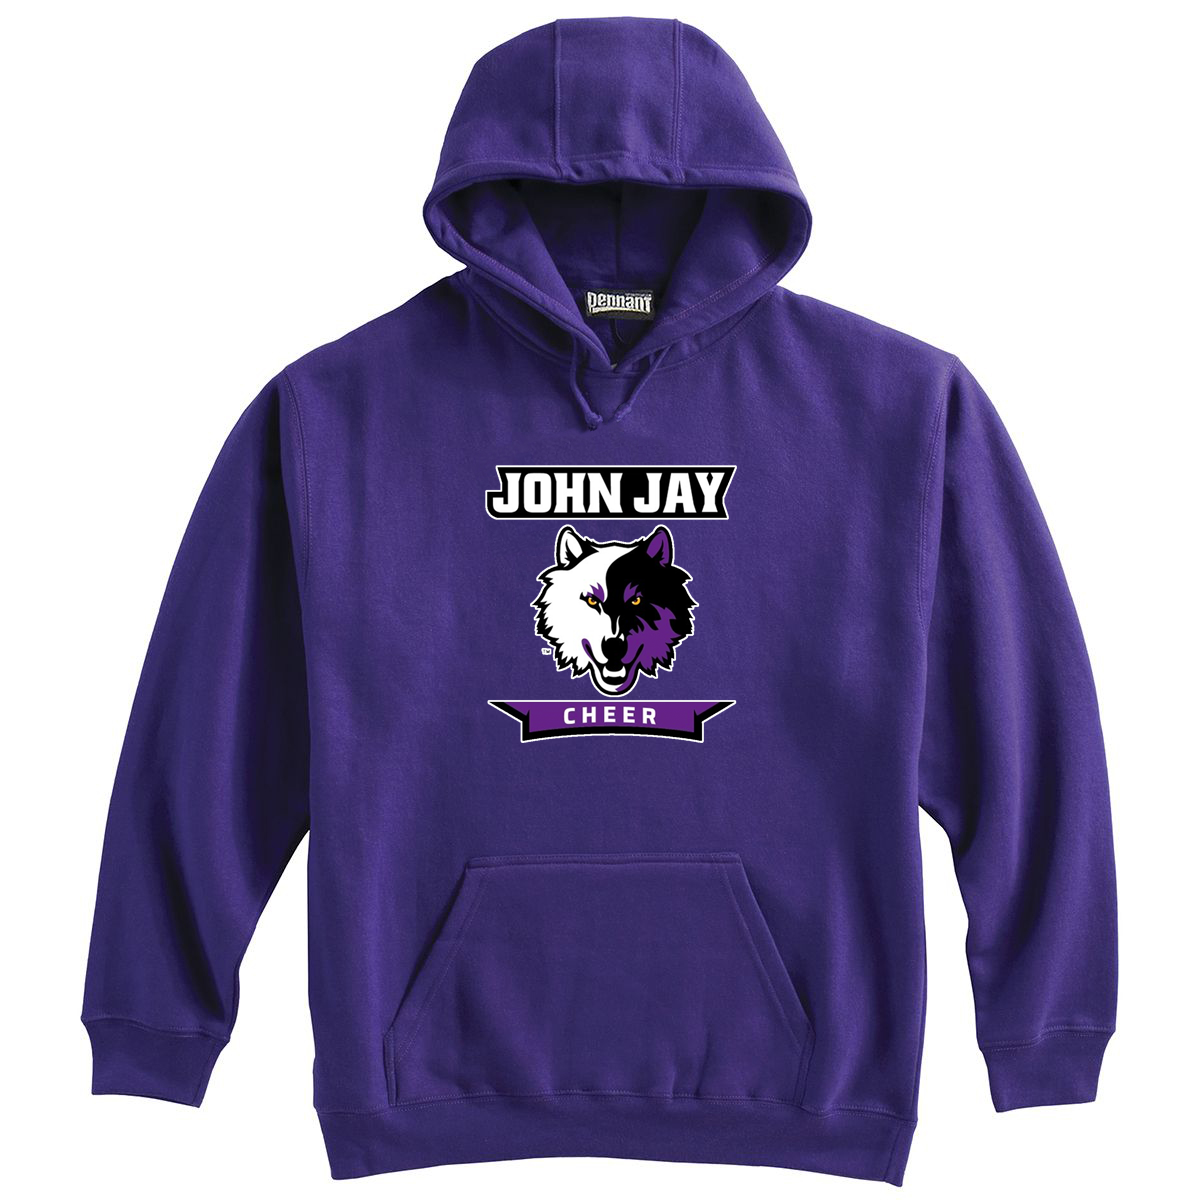 John Jay Youth Cheer Sweatshirt